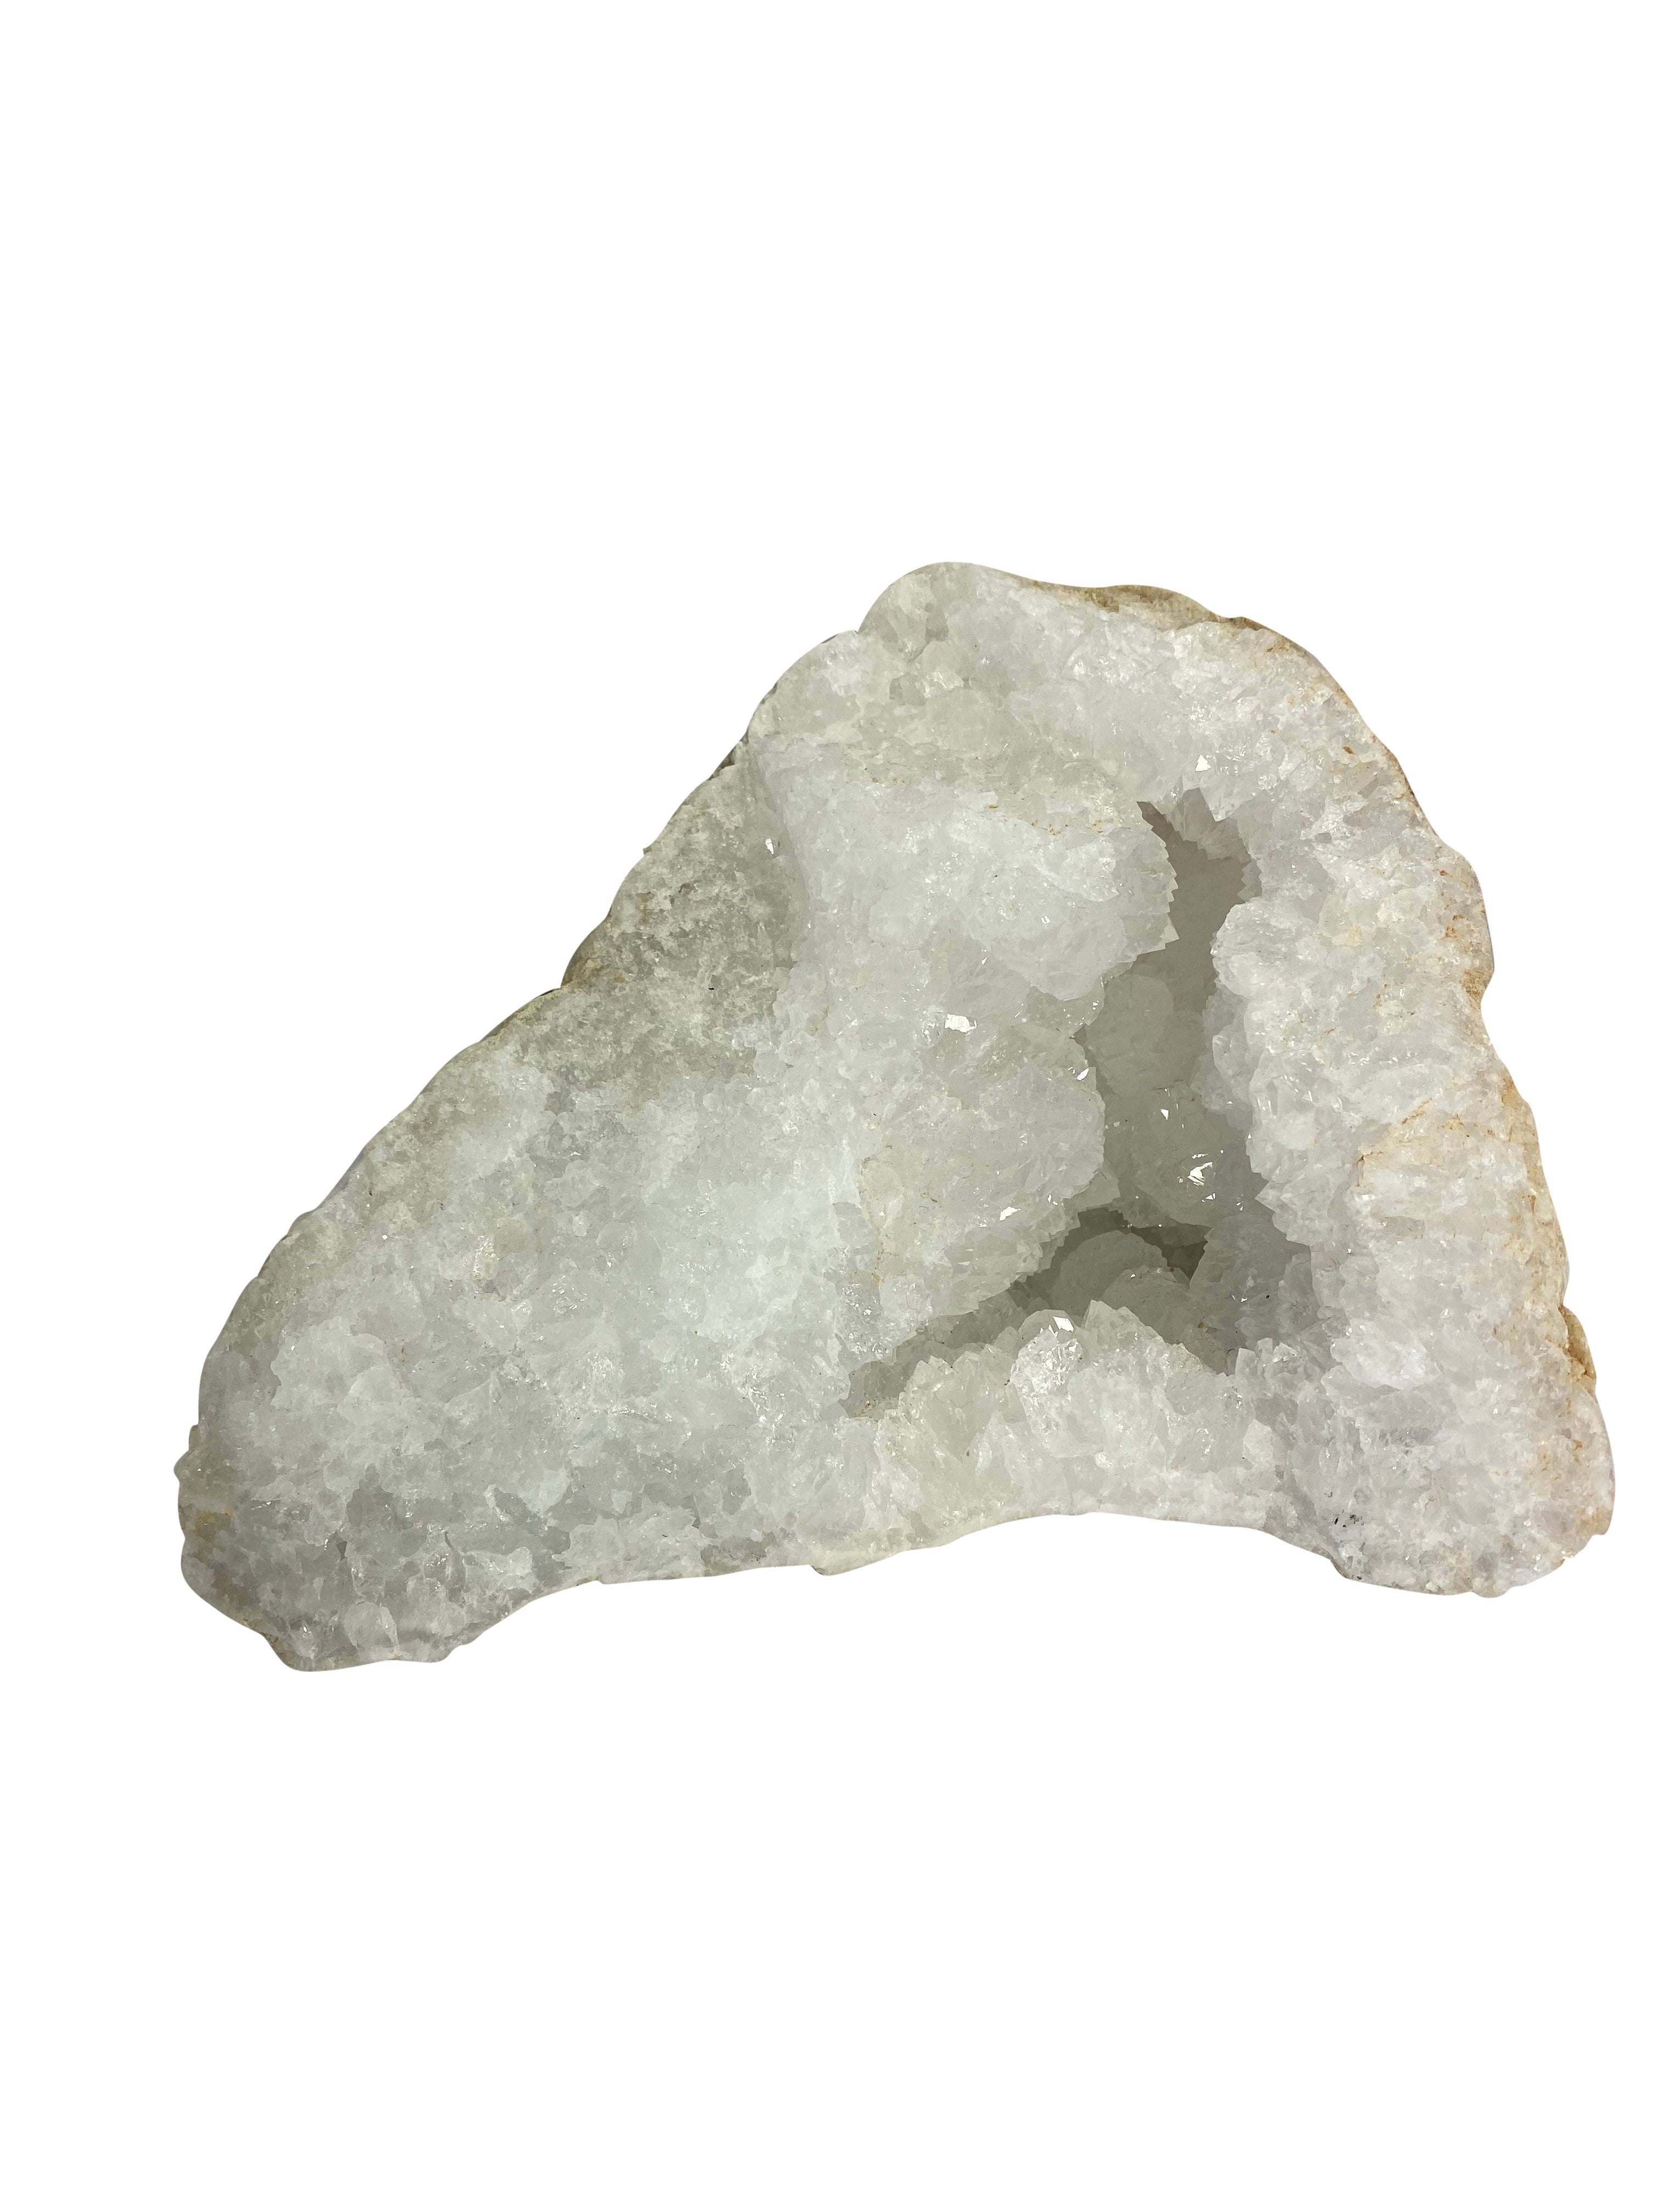 Clear Quartz Crystal Geode Cave K 3.8KG